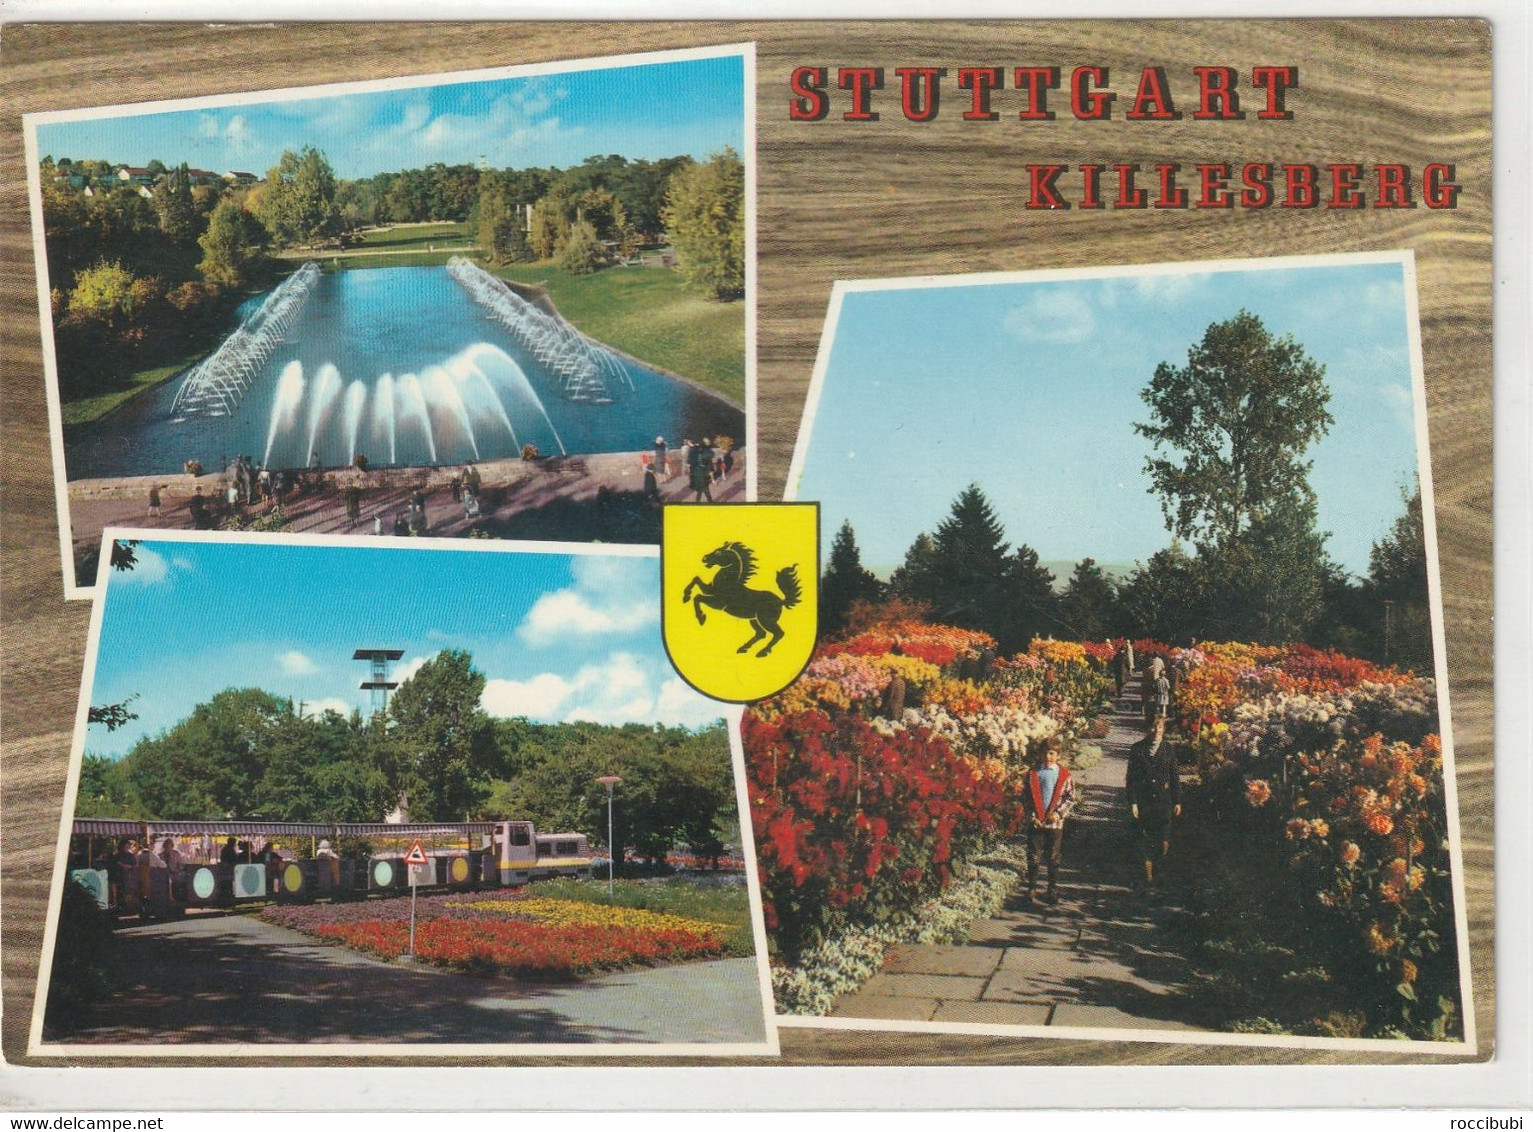 Stuttgart Killesberg, Baden-Württemberg - Stuttgart